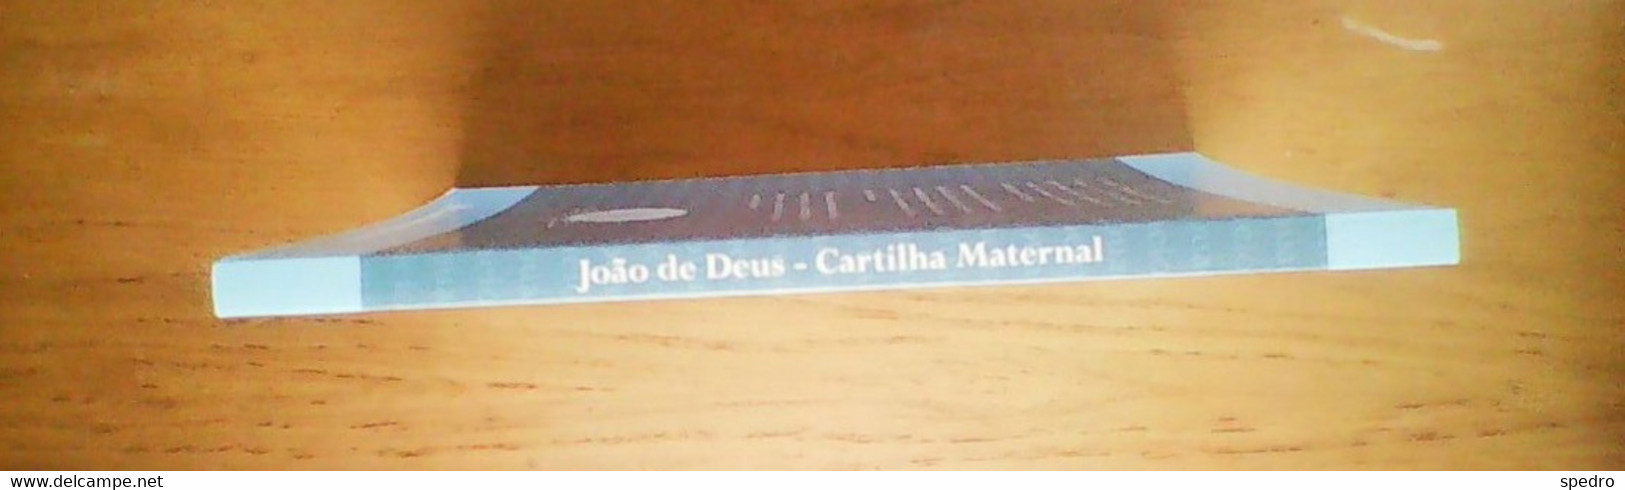 Portugal 2009 Livro Cartilha  Maternal Ou A Arte De Leitura João De Deus - School